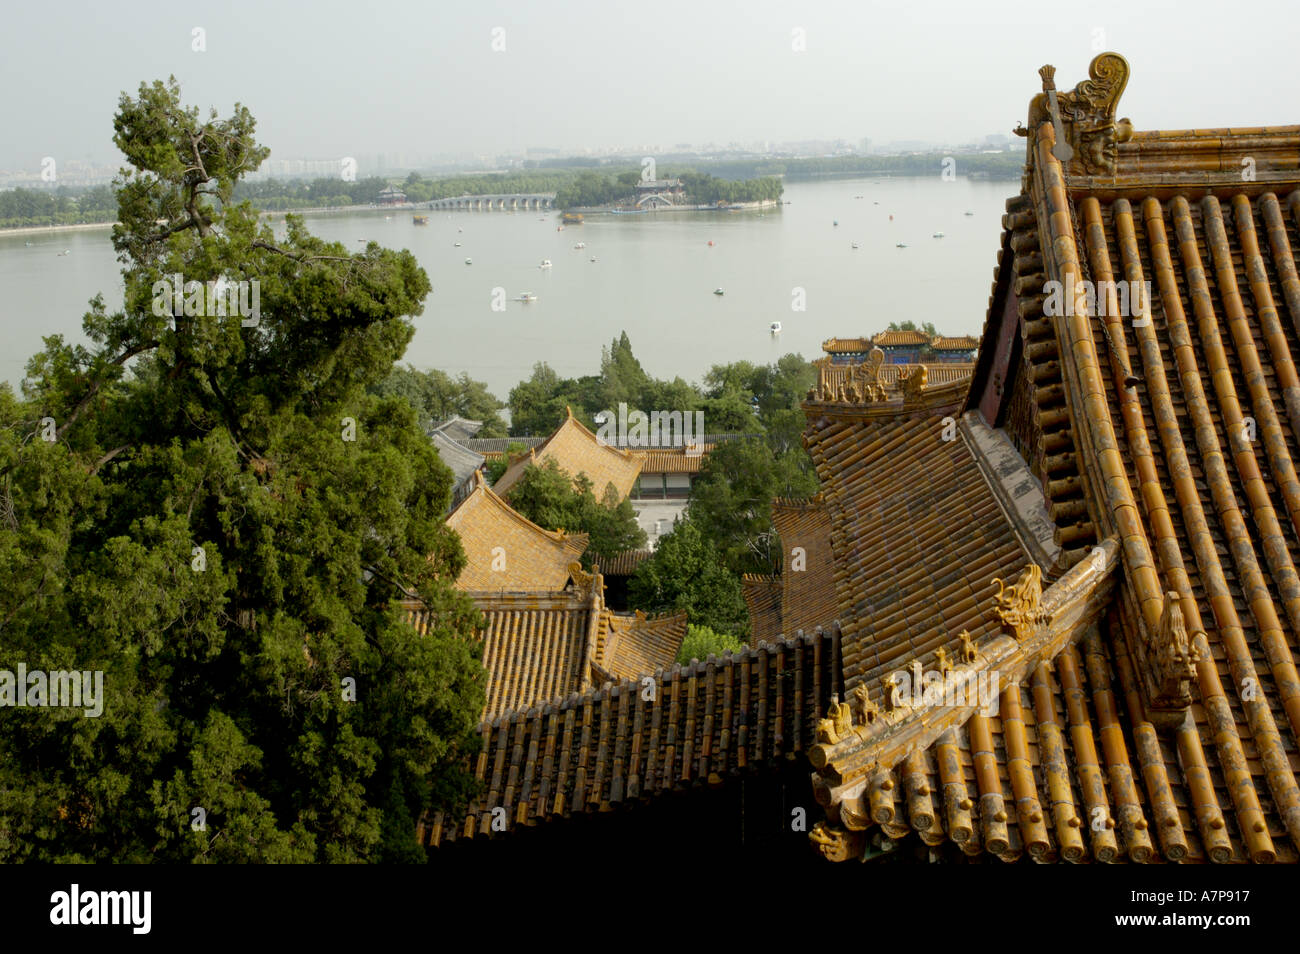 9 Minzu Yuan Chine Pékin Palais d'été Le lac Kunming et toits à l'intérieur du pavillon de fragrance bouddhique Foxiang ge Banque D'Images